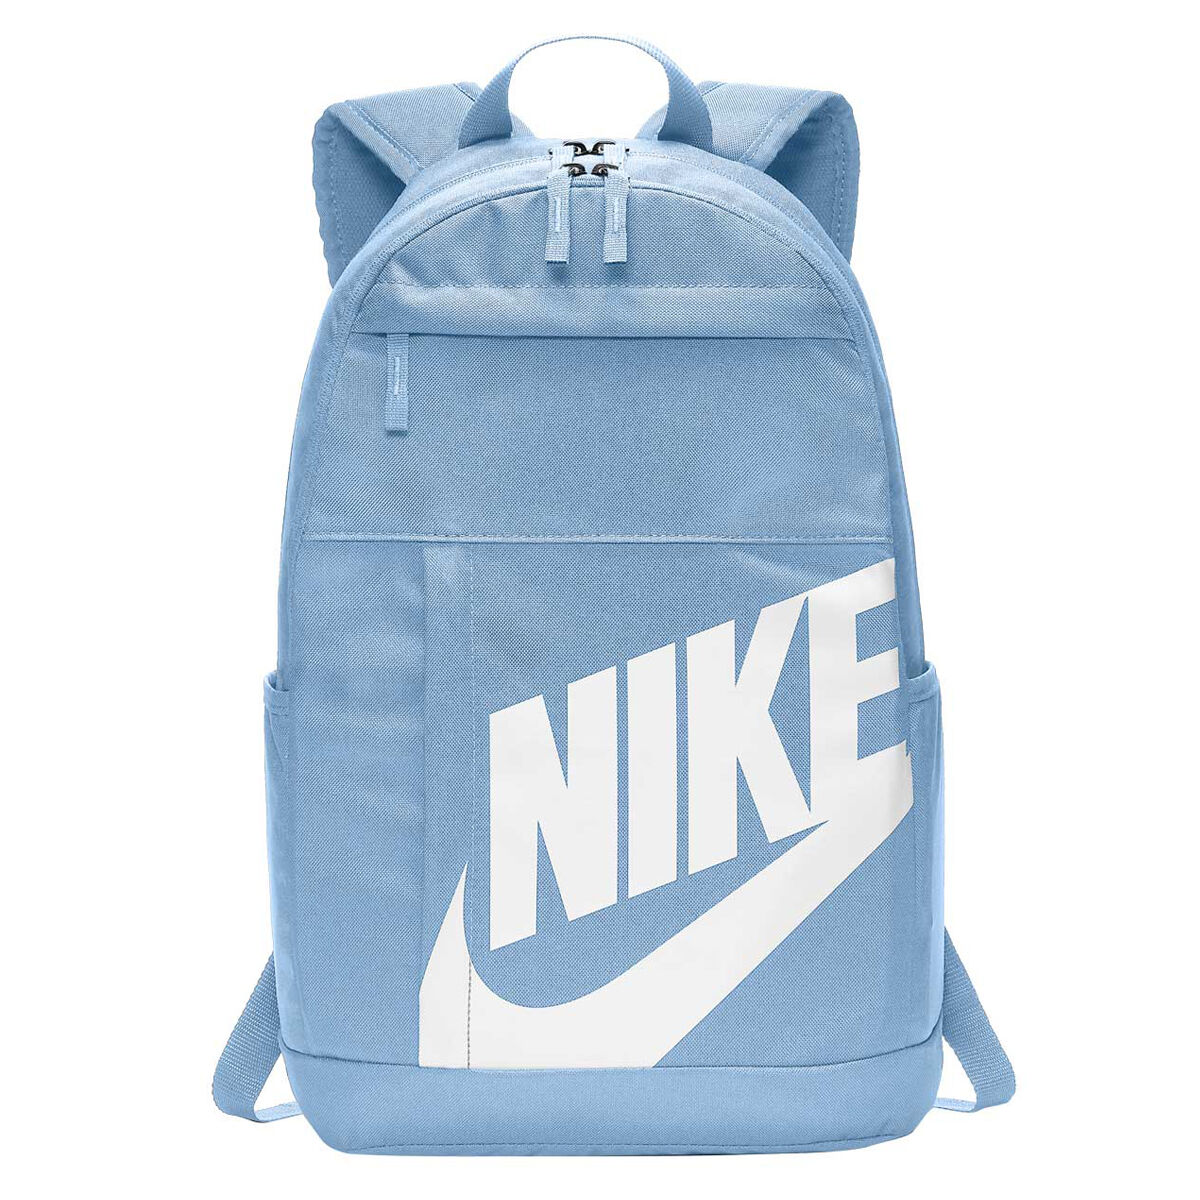 nike school bags price edgars